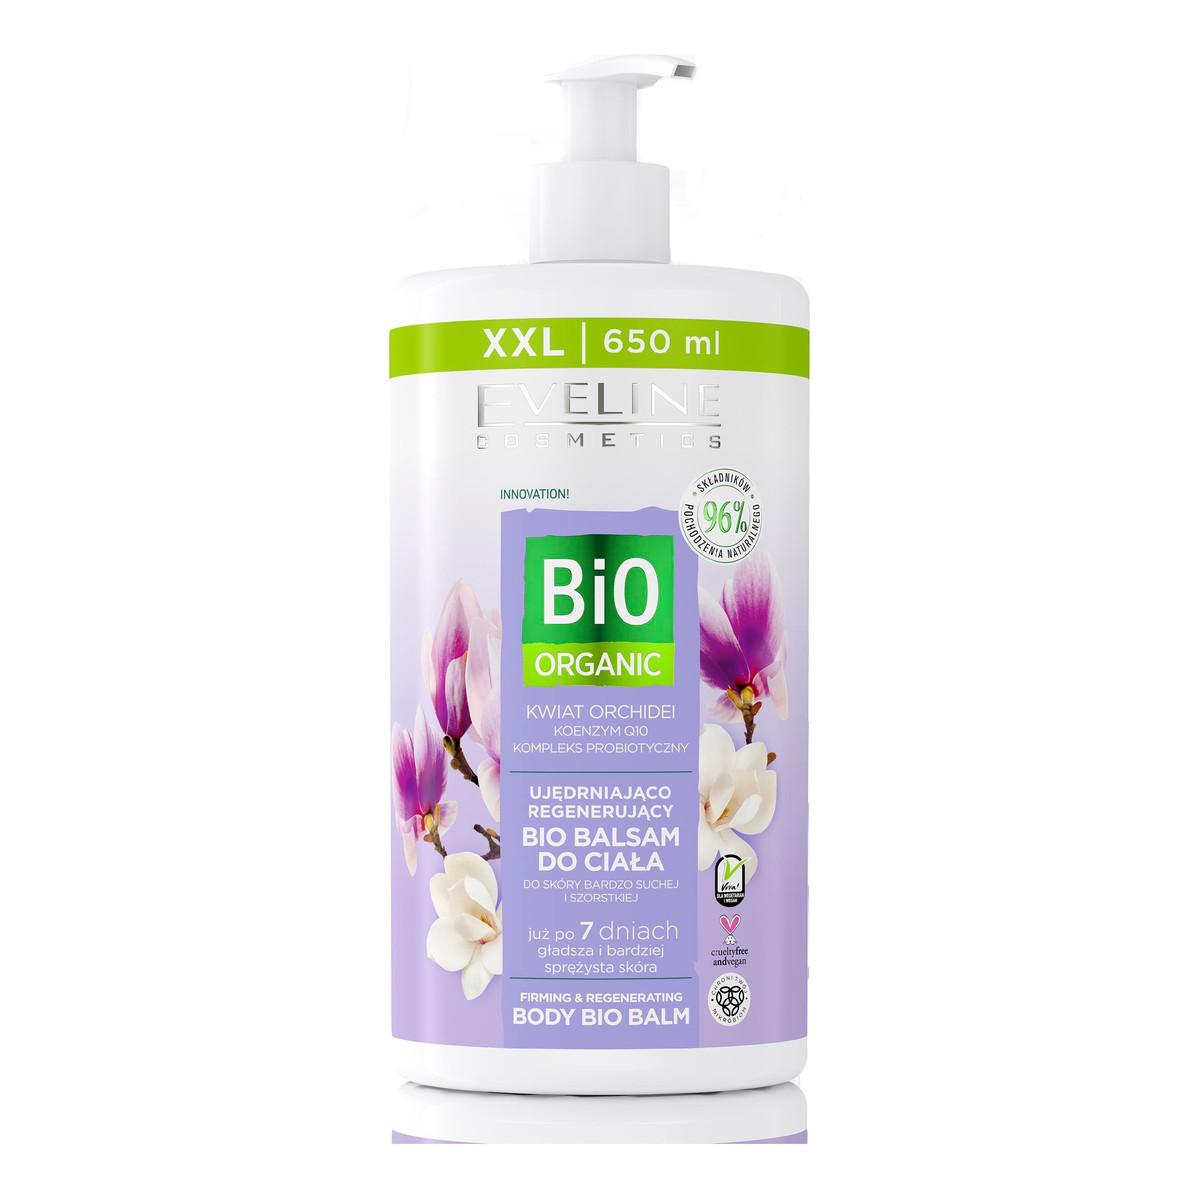 Eveline Bio Organic Ujedrniajaco-Regenerujacy Bio Balsam do ciala Kwiat Orchidei 650ml